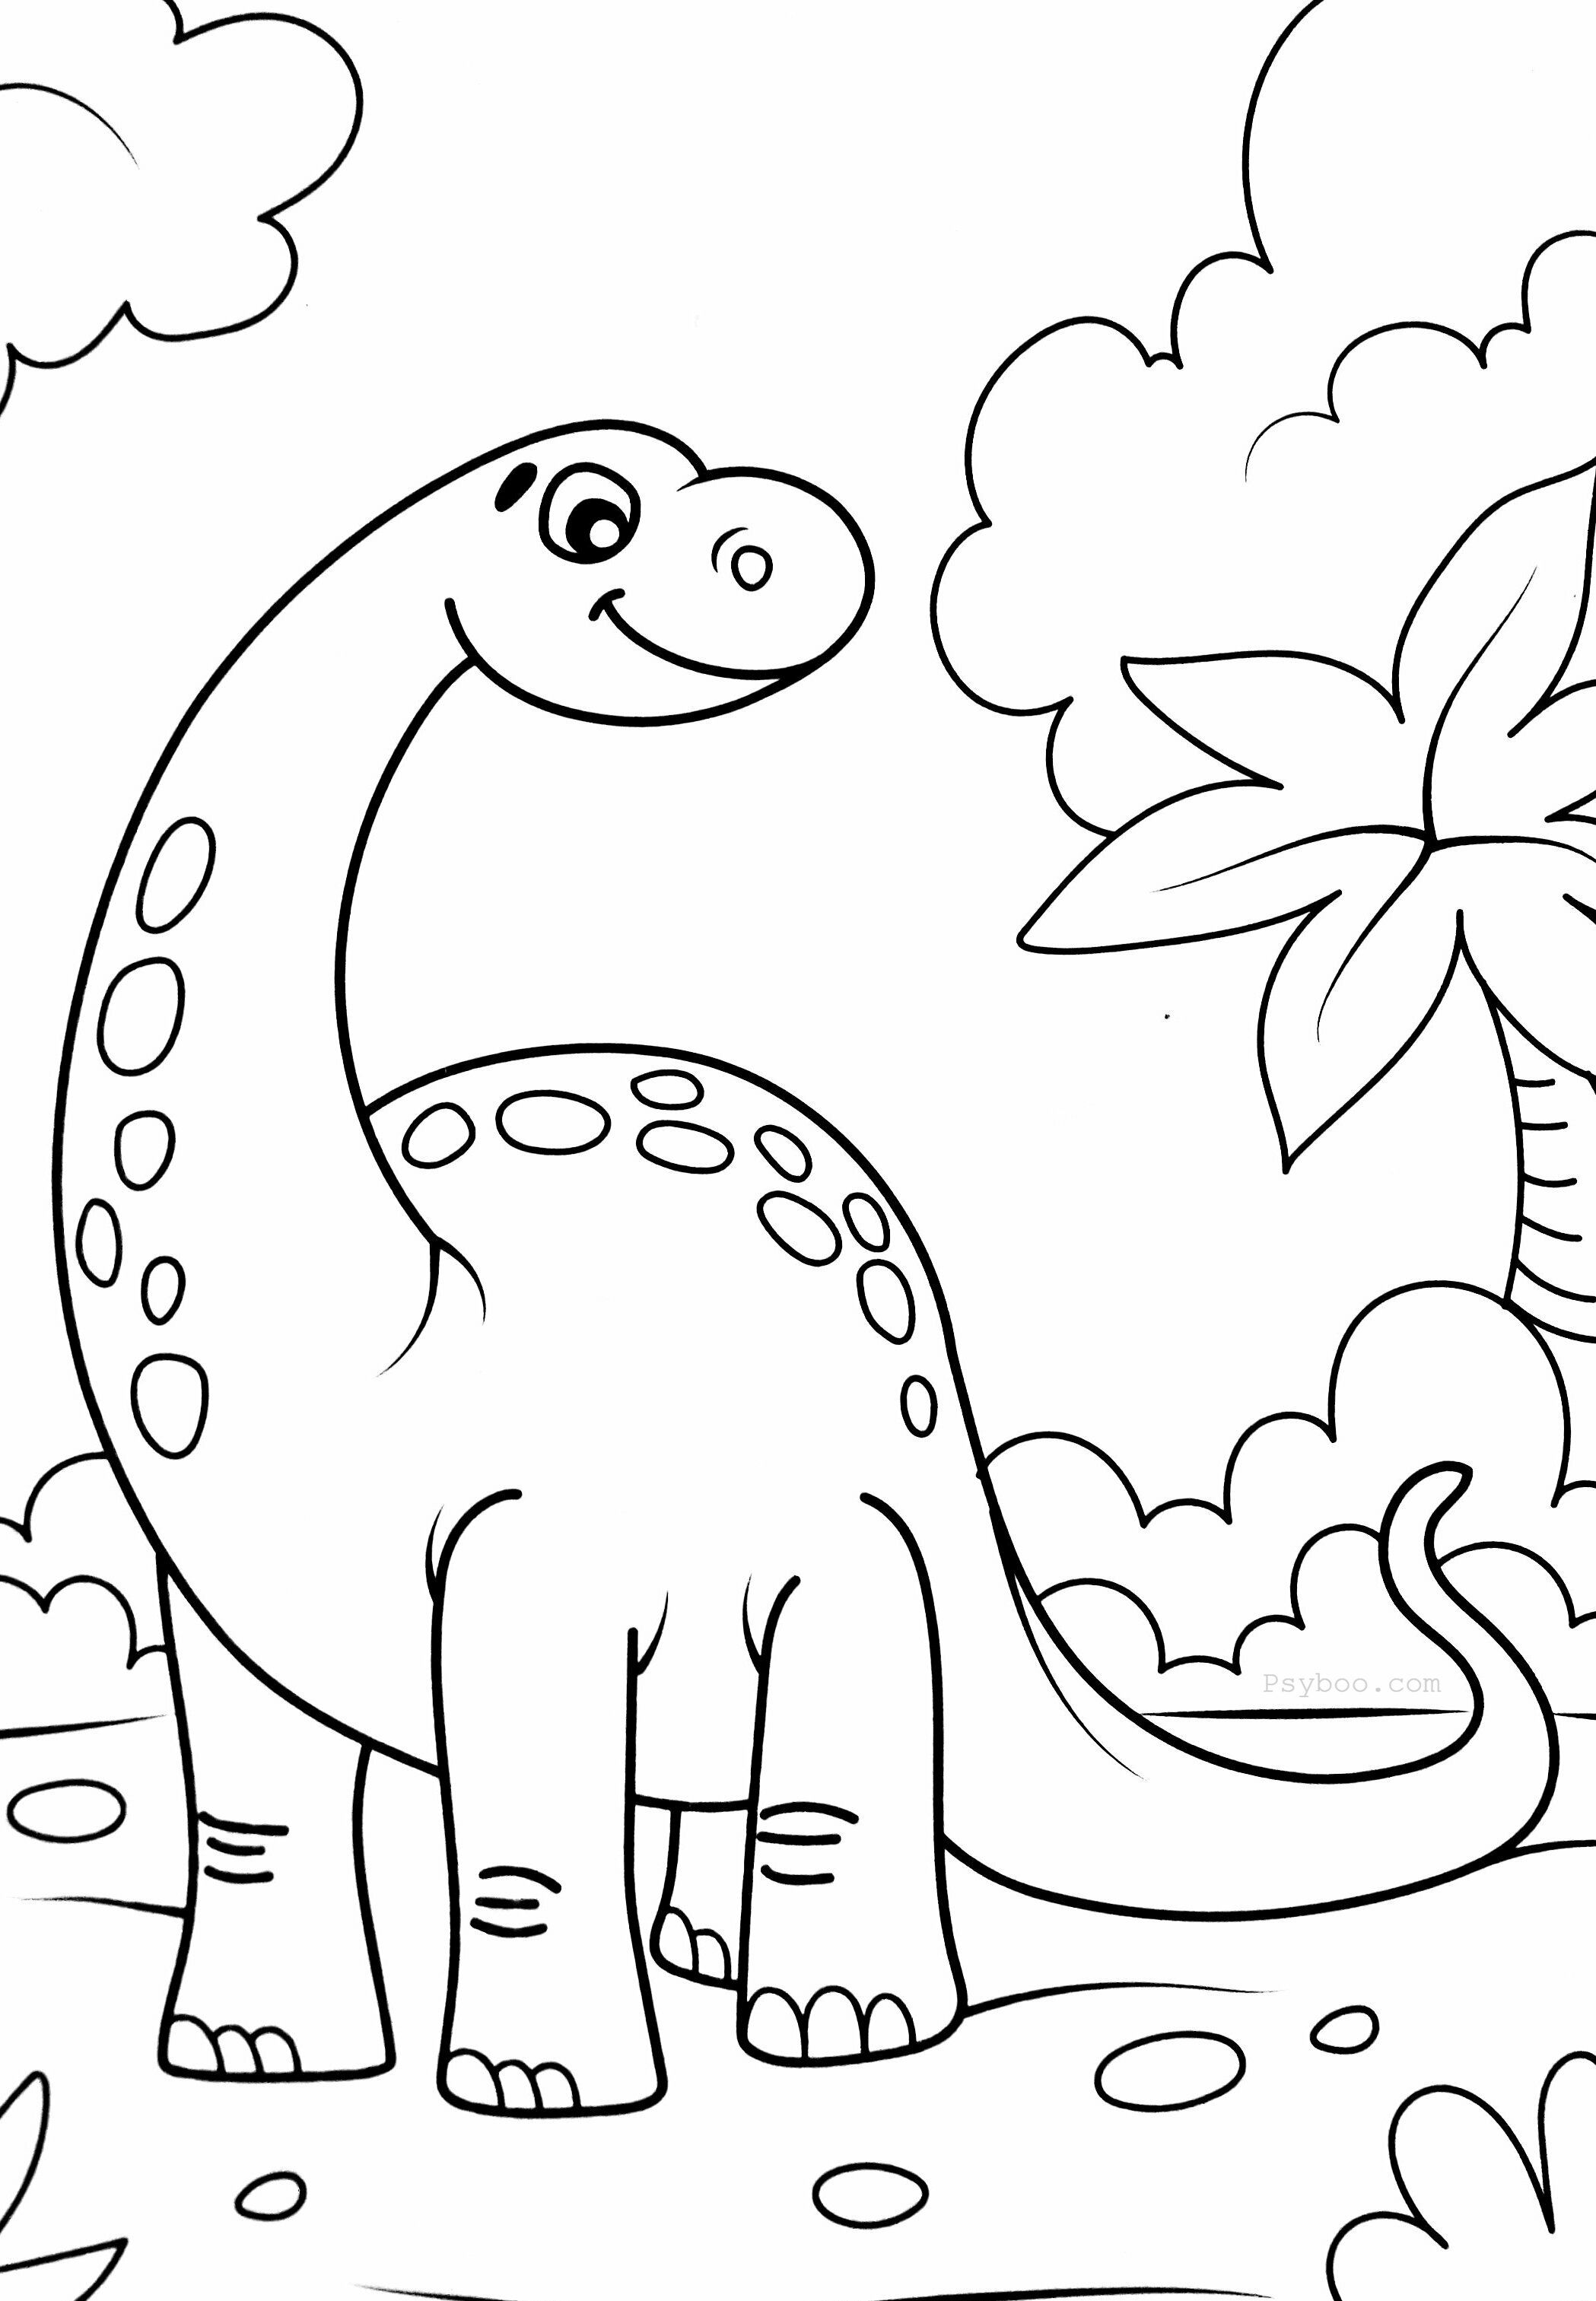 Printable Preschool Dinosaur Coloring Pages Teaching Treasure